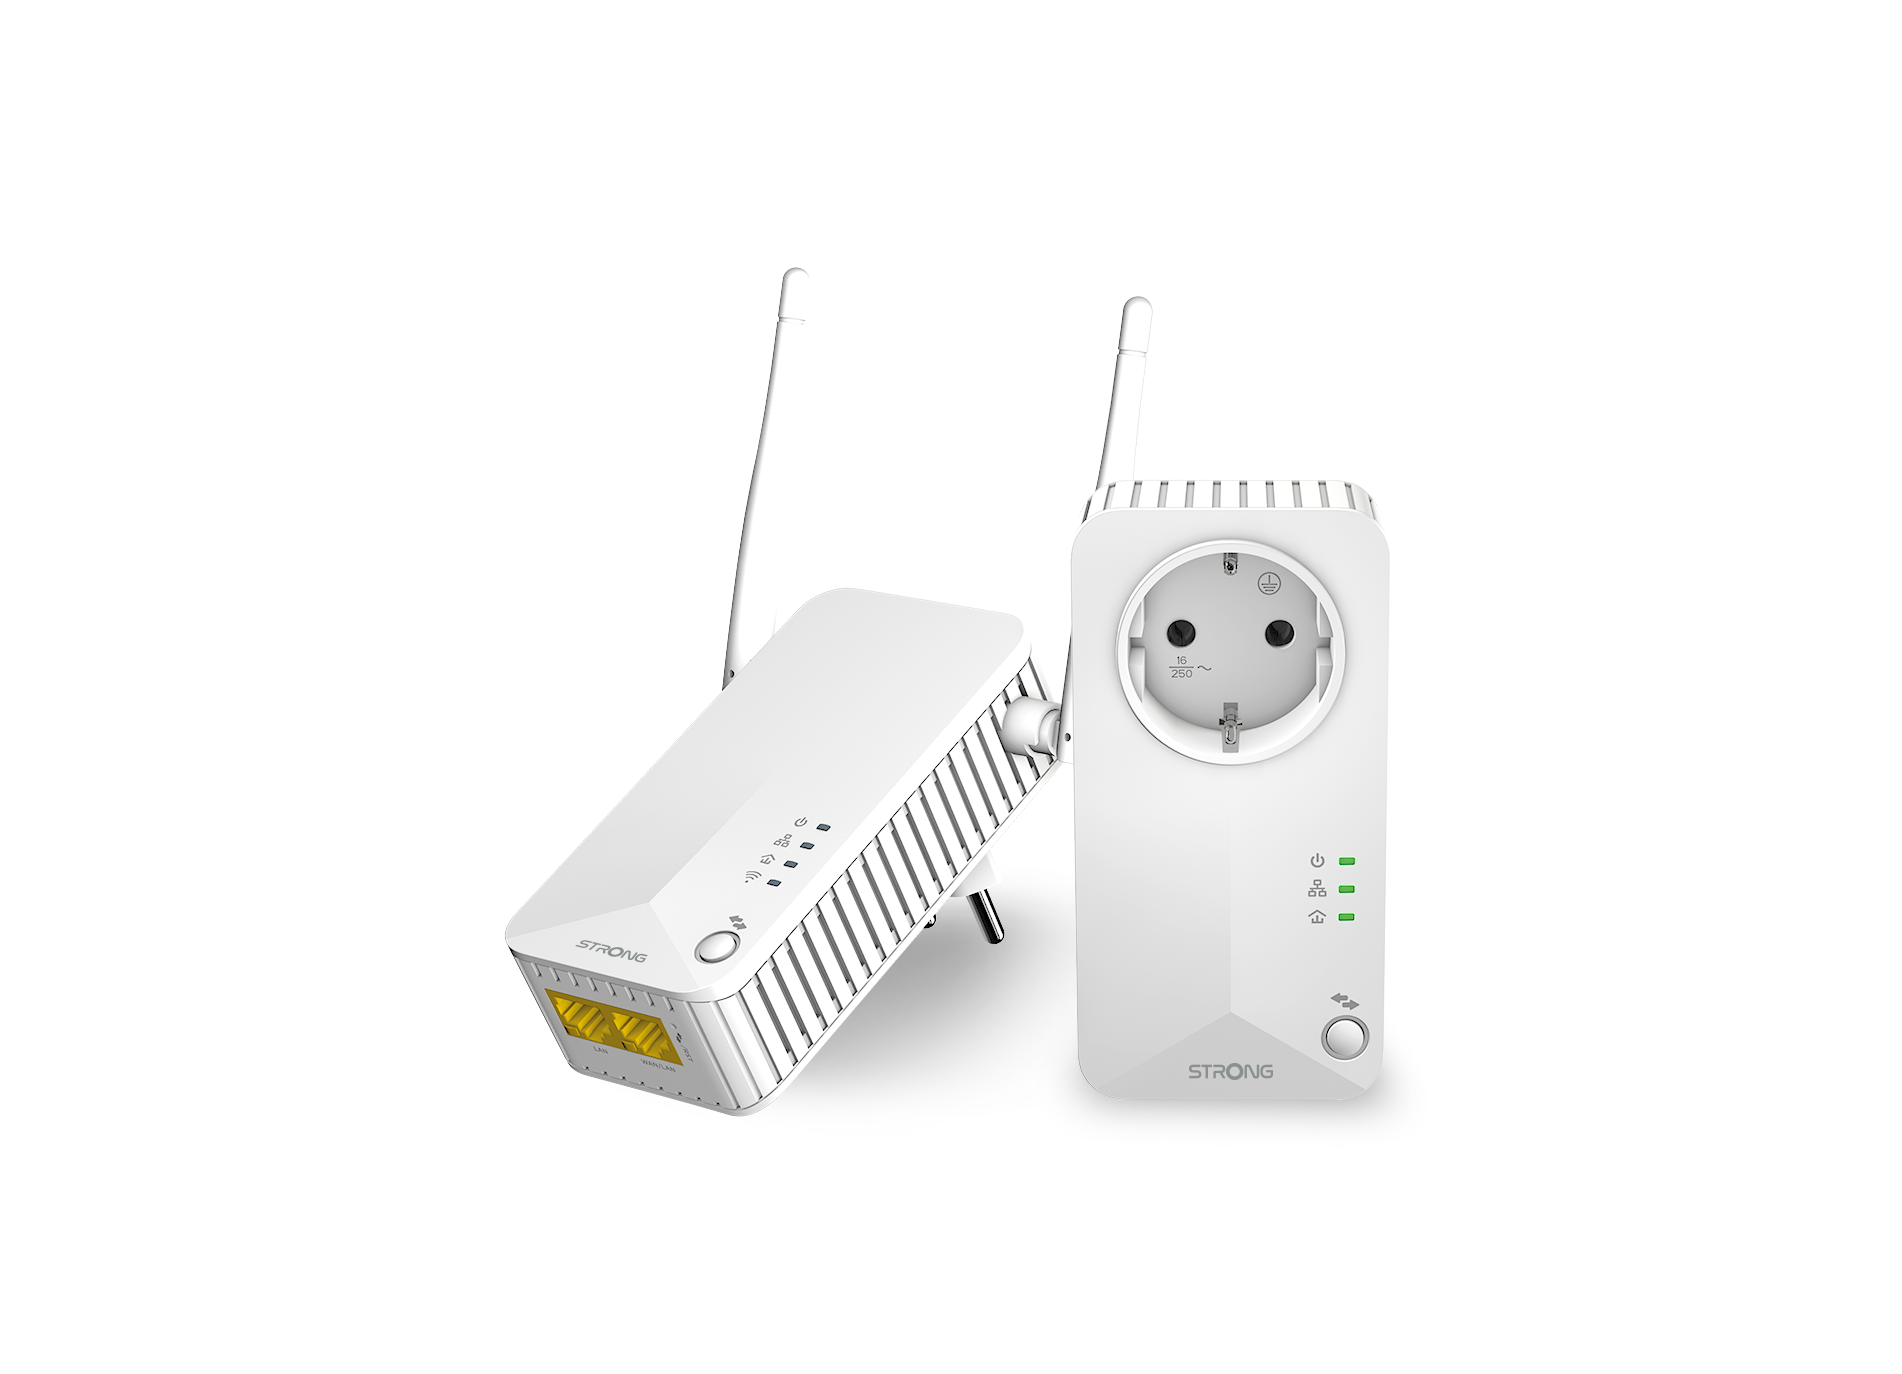 STRONG Powerline 600 Duo EU kabelgebunden, LAN Powerline kabellos Mbit/s WLAN 600 Set